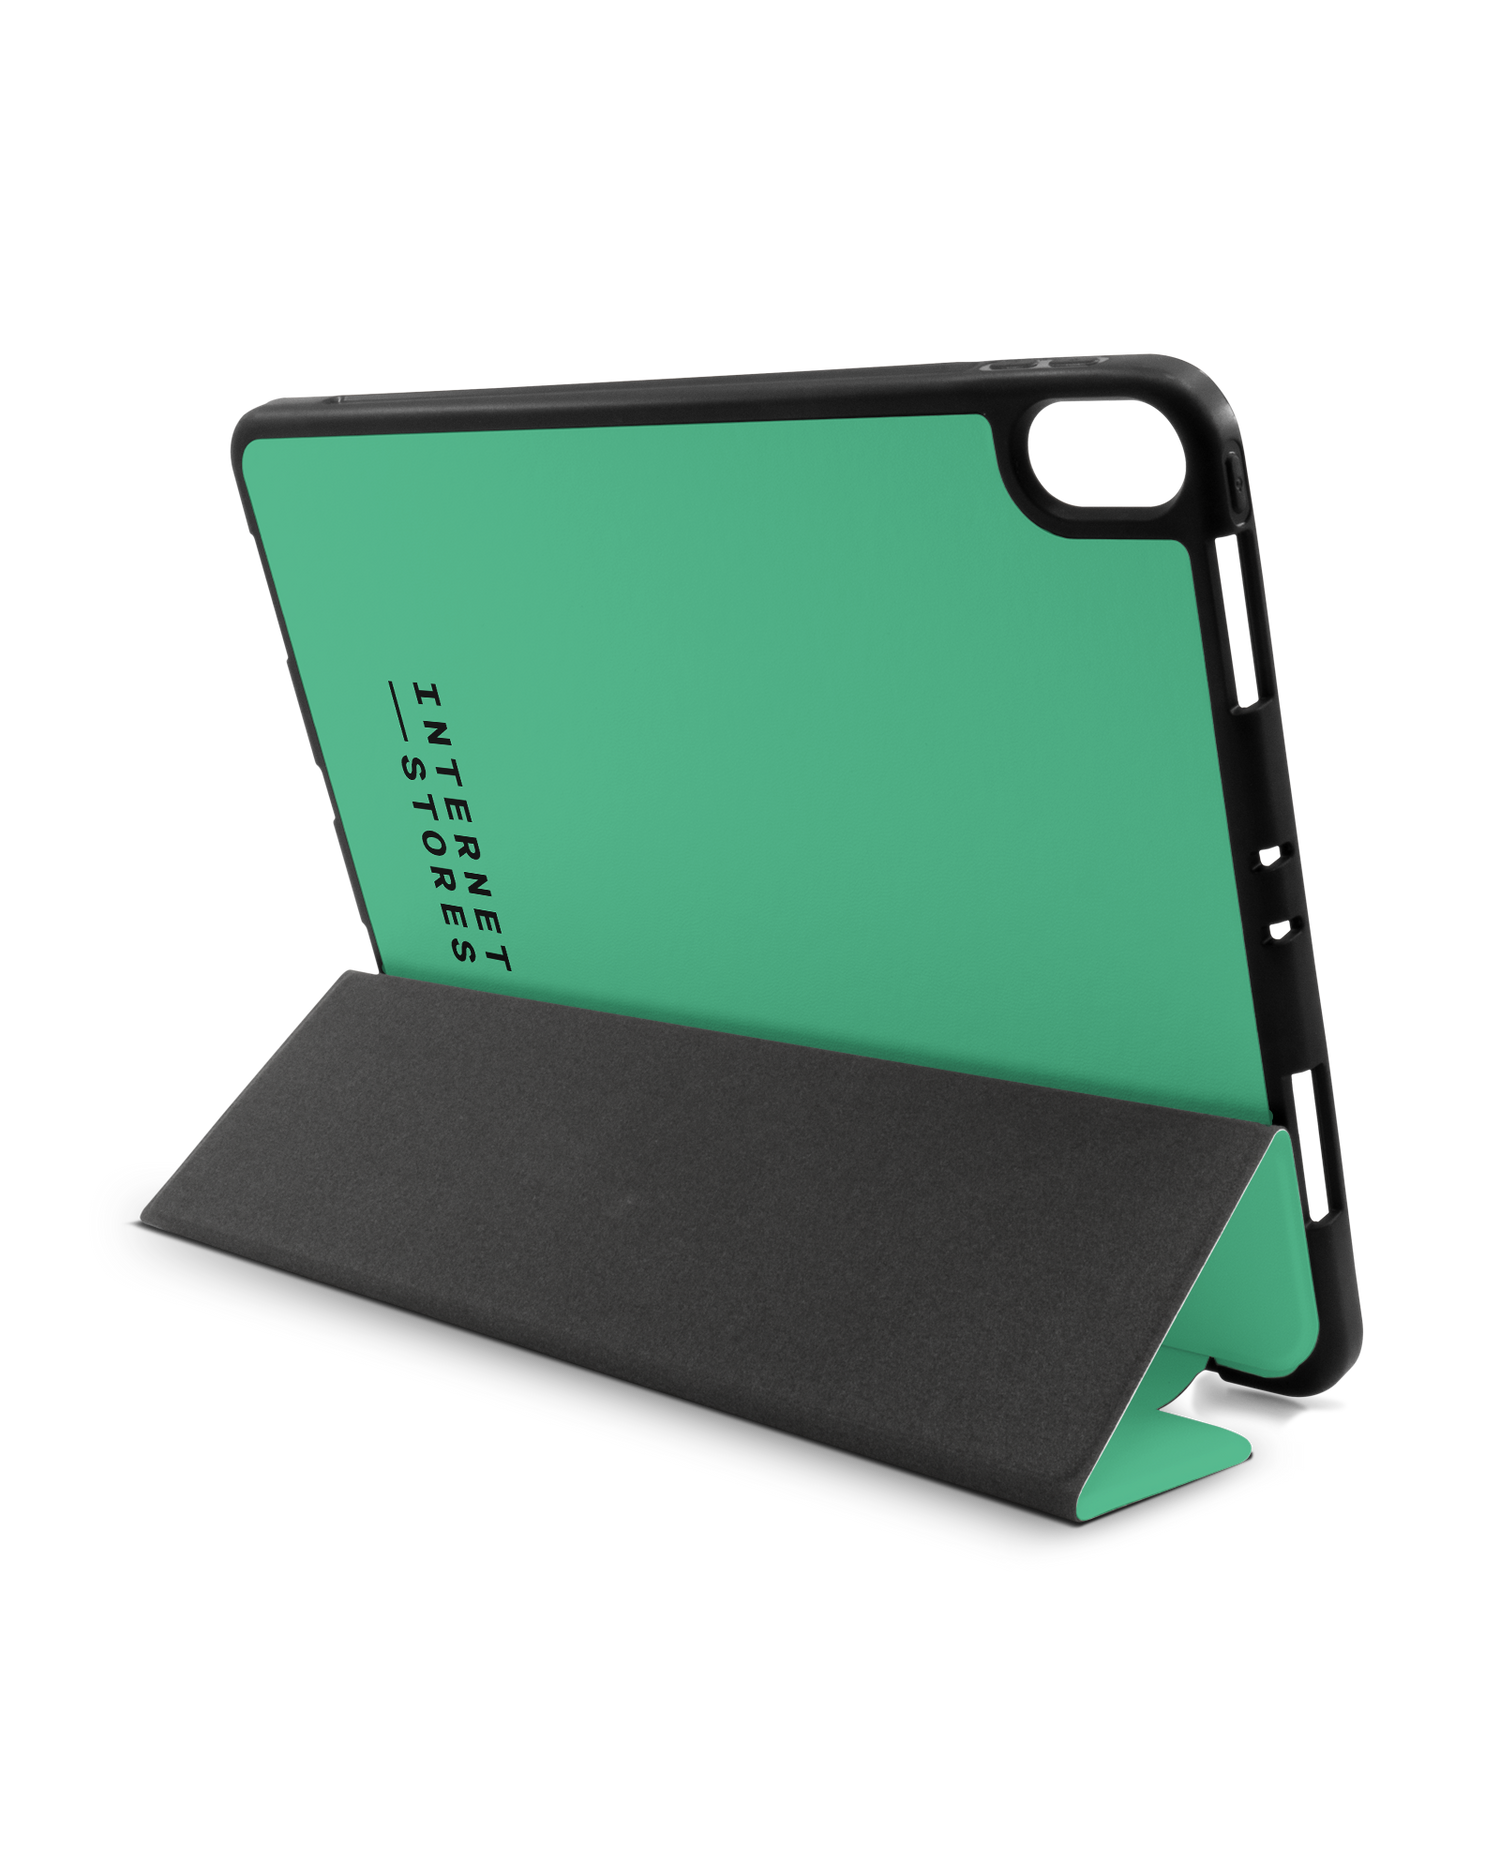 ISG Neon Green iPad Hülle mit Stifthalter Apple iPad Pro 11'' (2018): Aufgestellt im Querformat von hinten